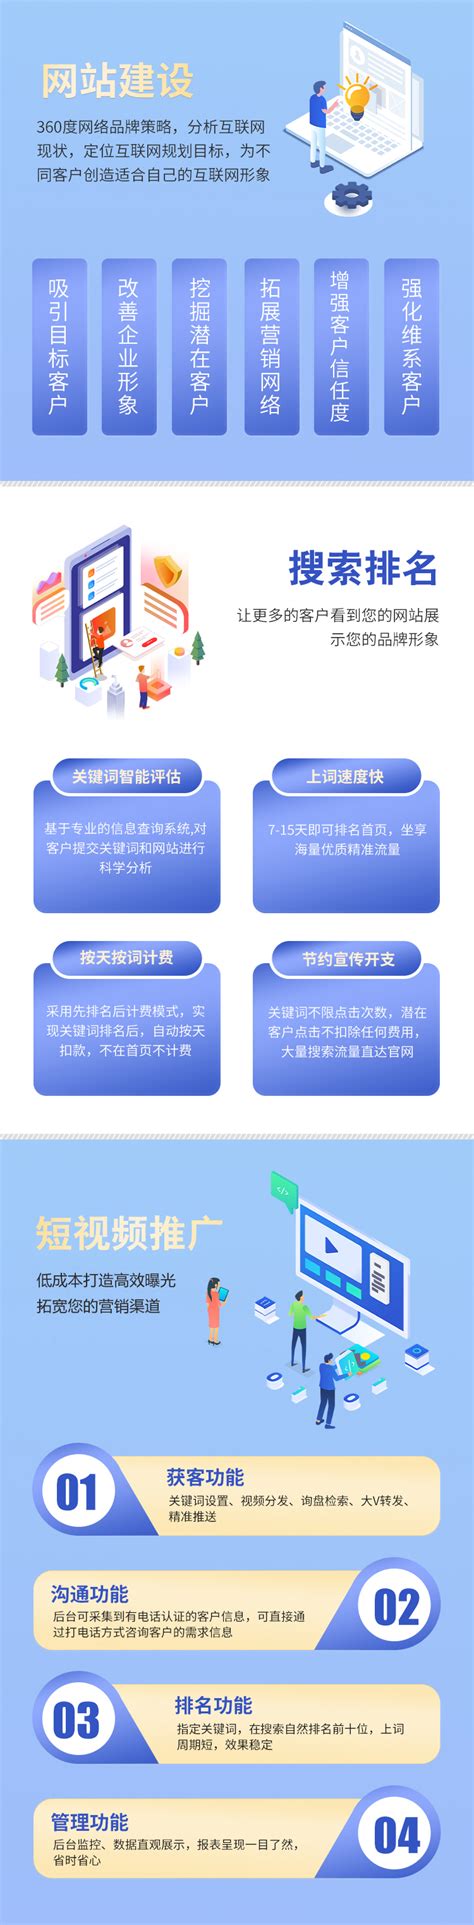 广东网站建设软件开发